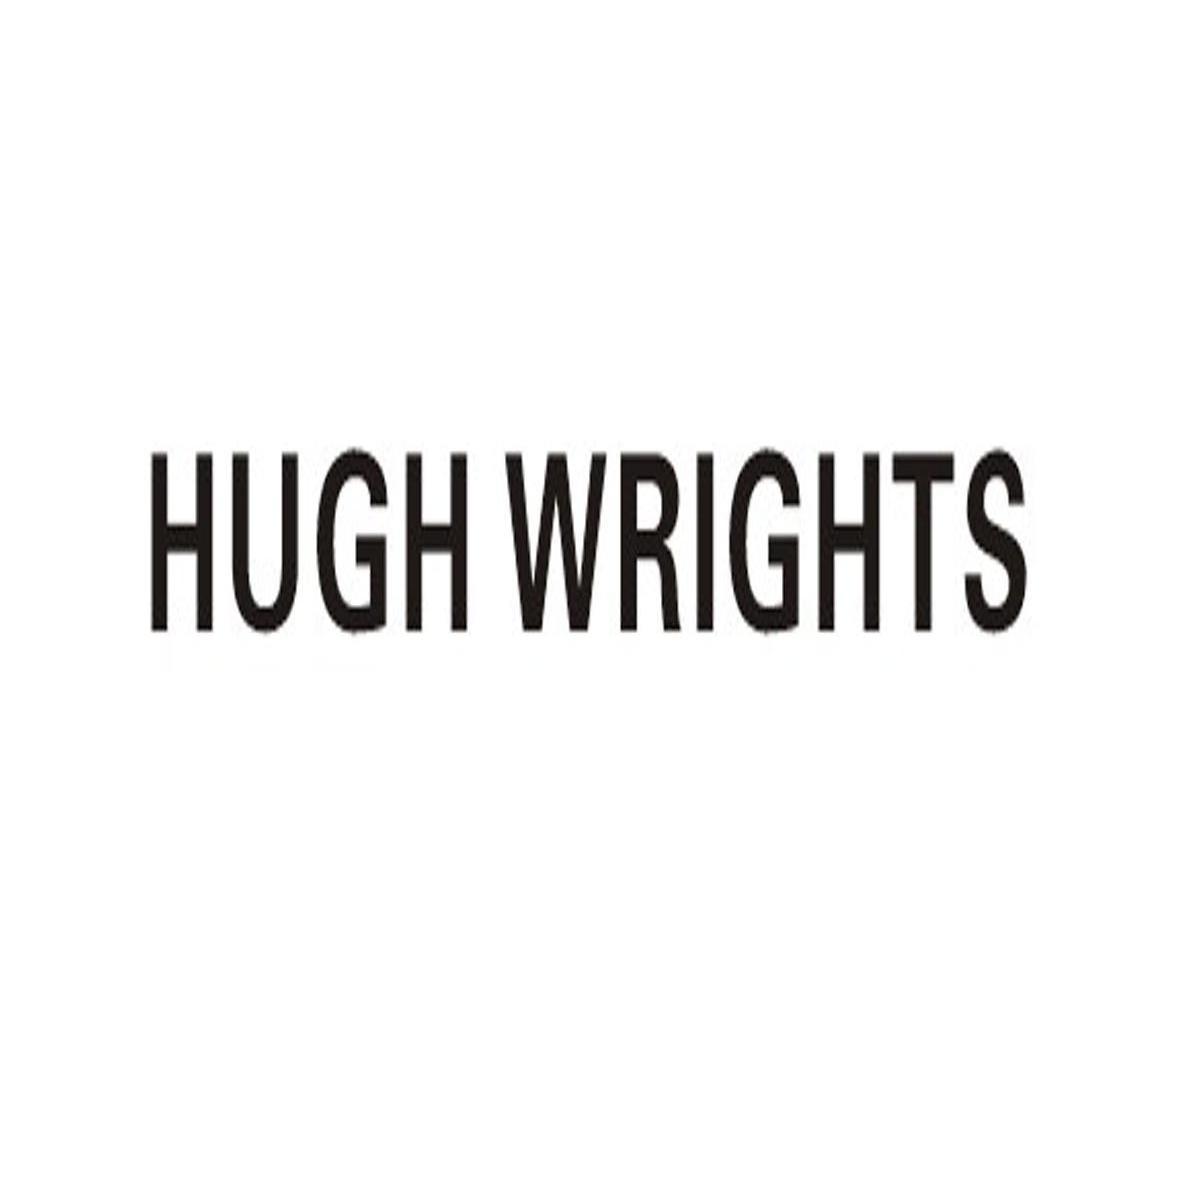 HUGH WRIGHTS